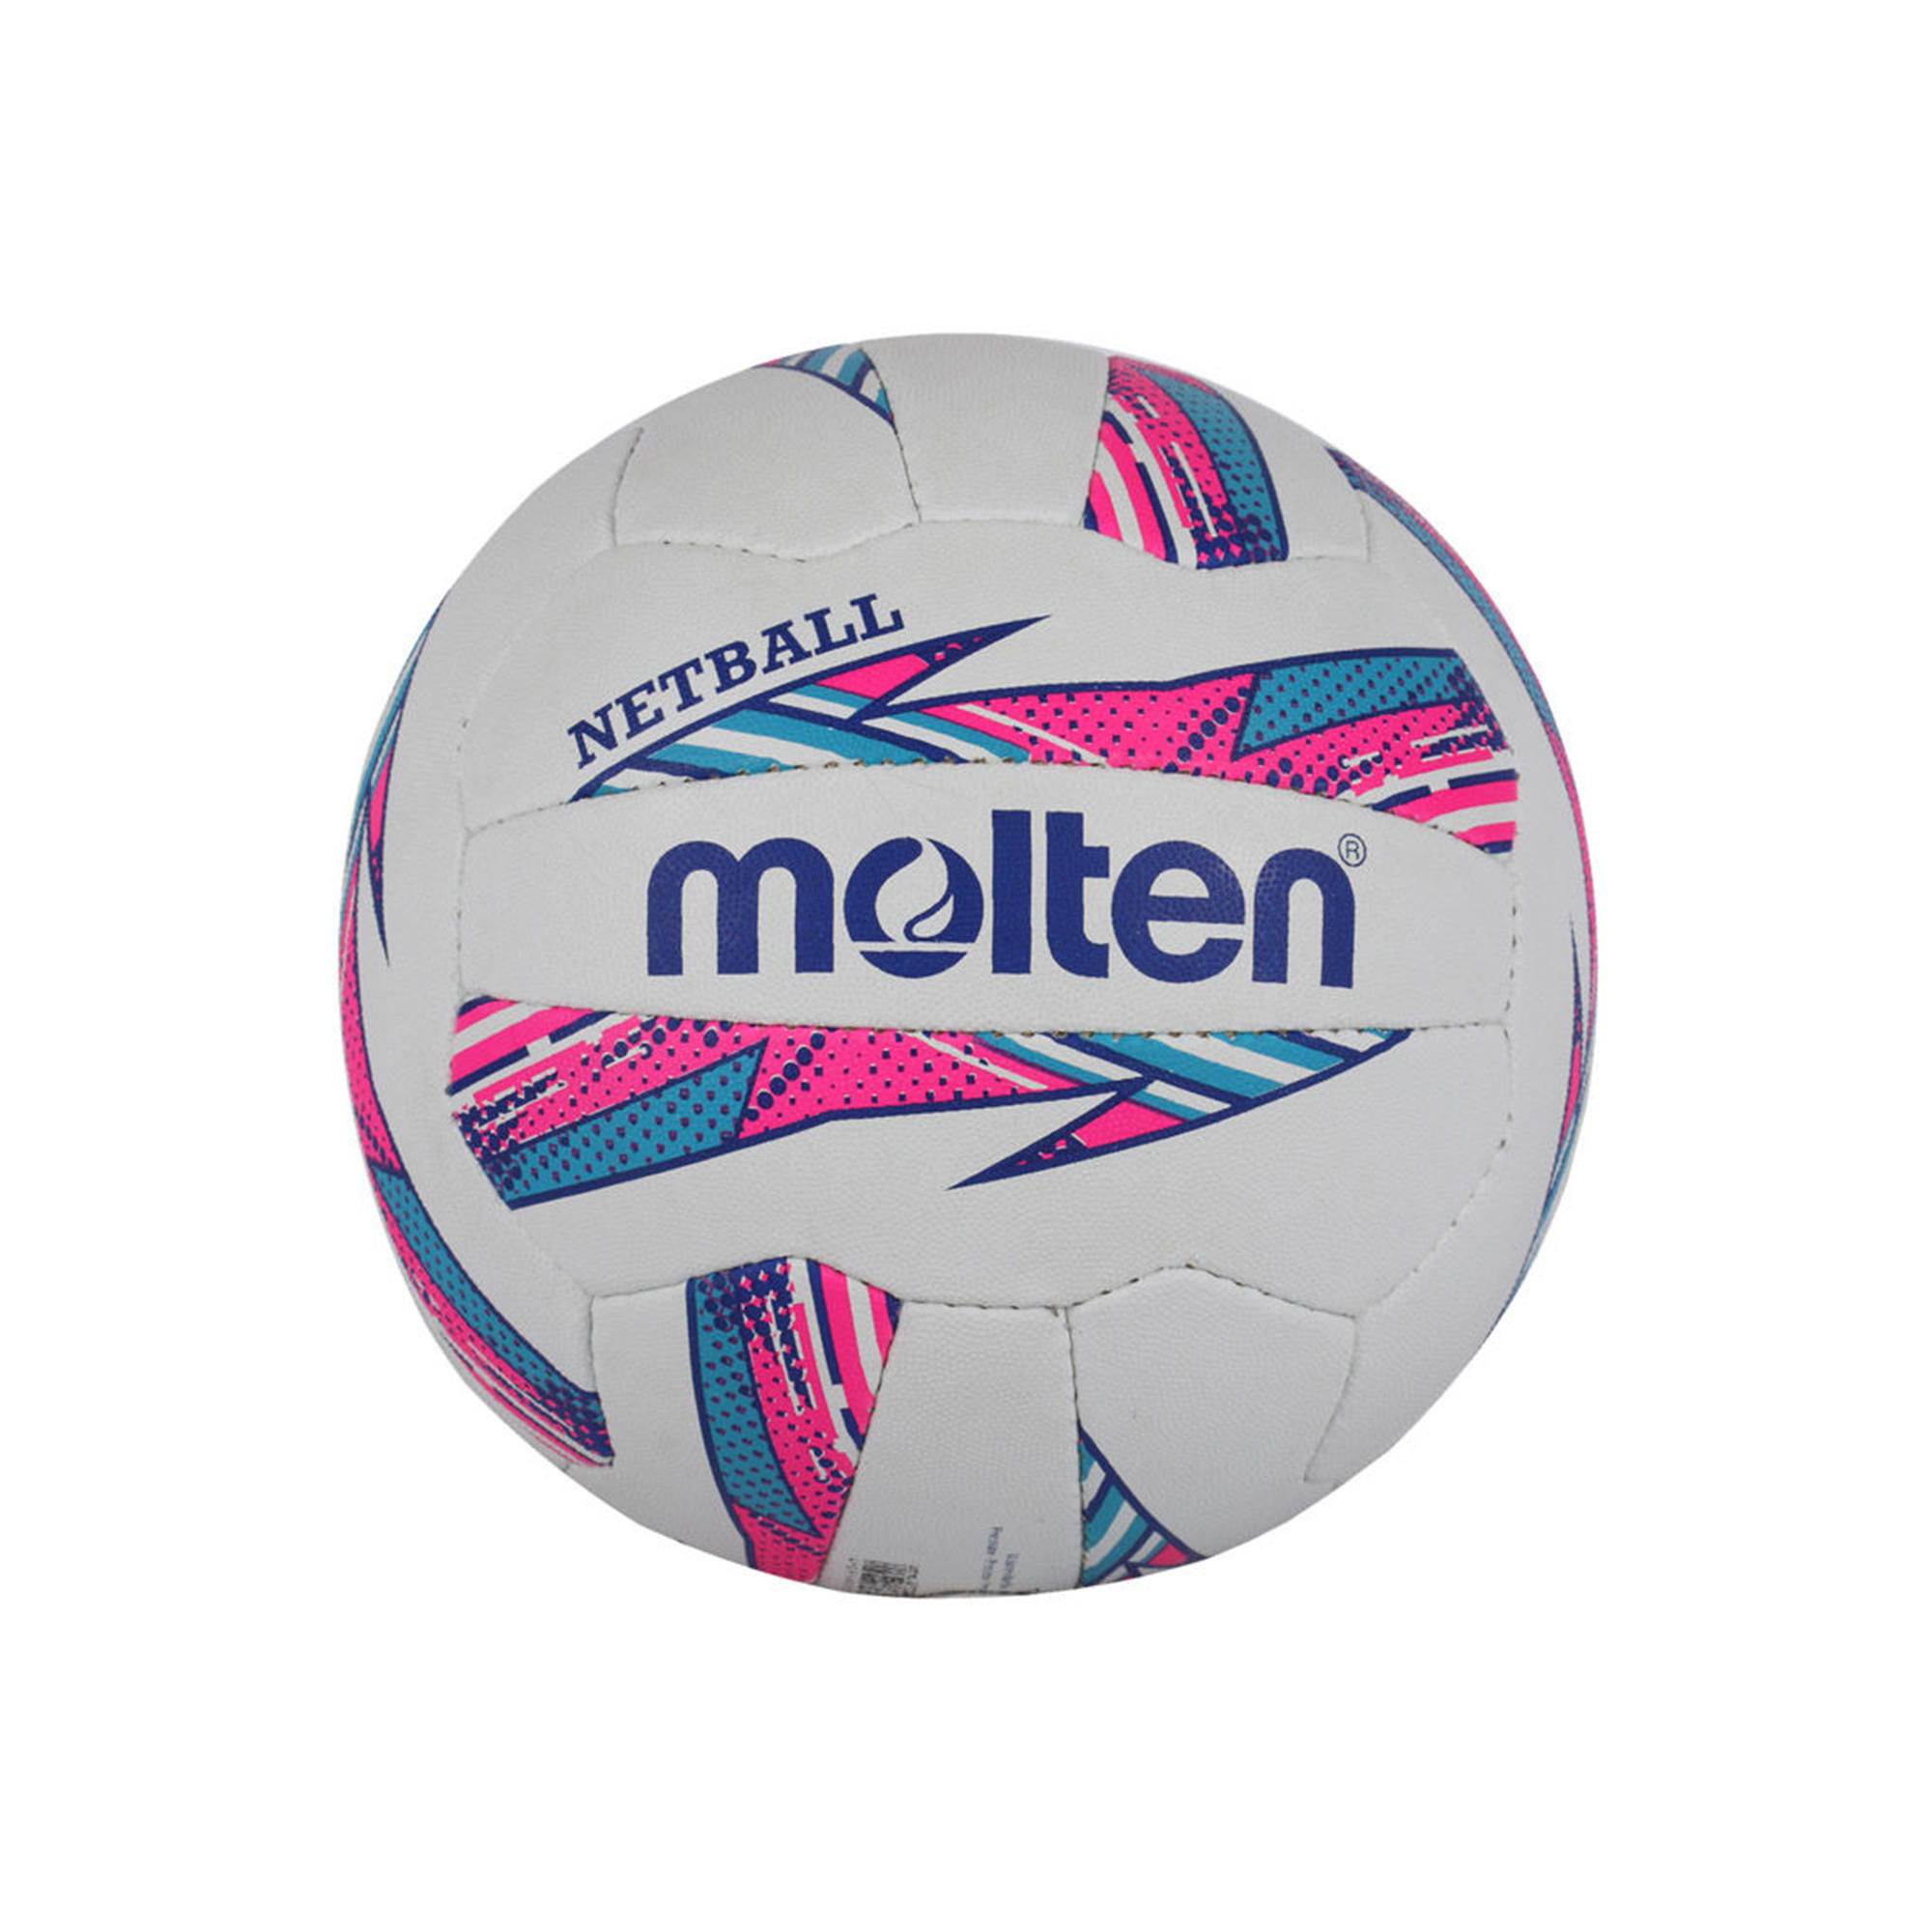 Striker Netball UK Molten Pink/Blue 